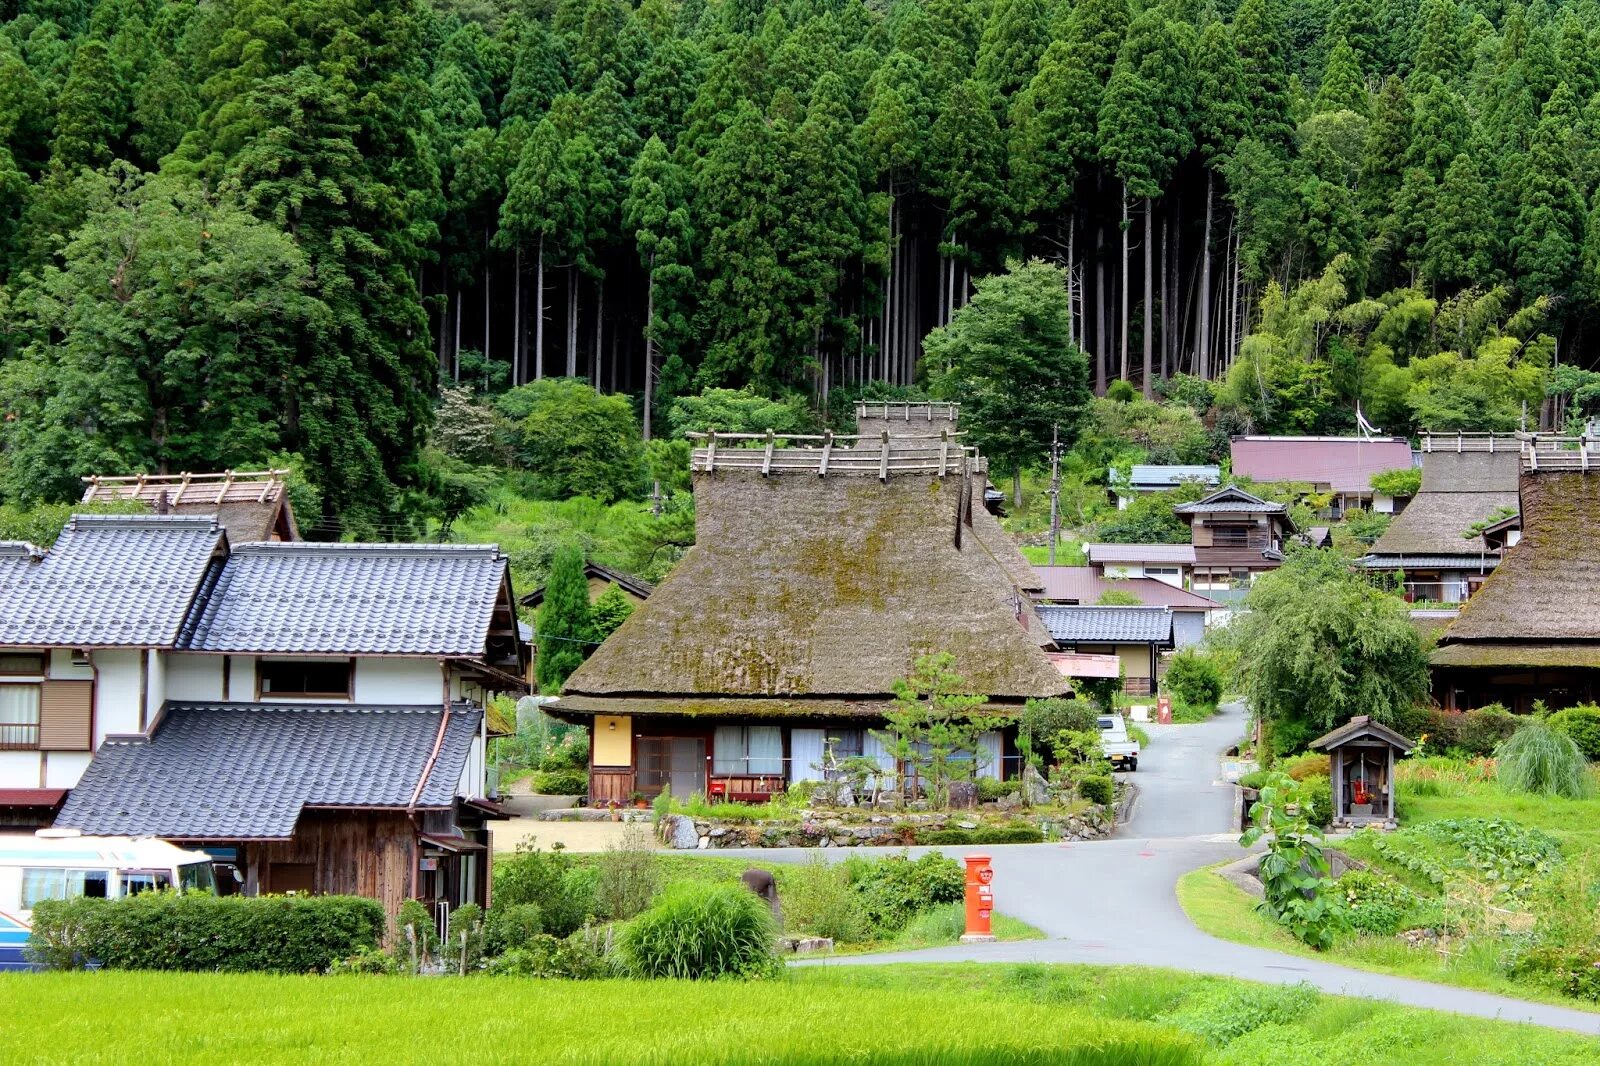 Japanese village. Япония Киото деревня. Япония фольклорная деревня Ияси-но-Сато. Каябуки но Сато. Мияма Киото.